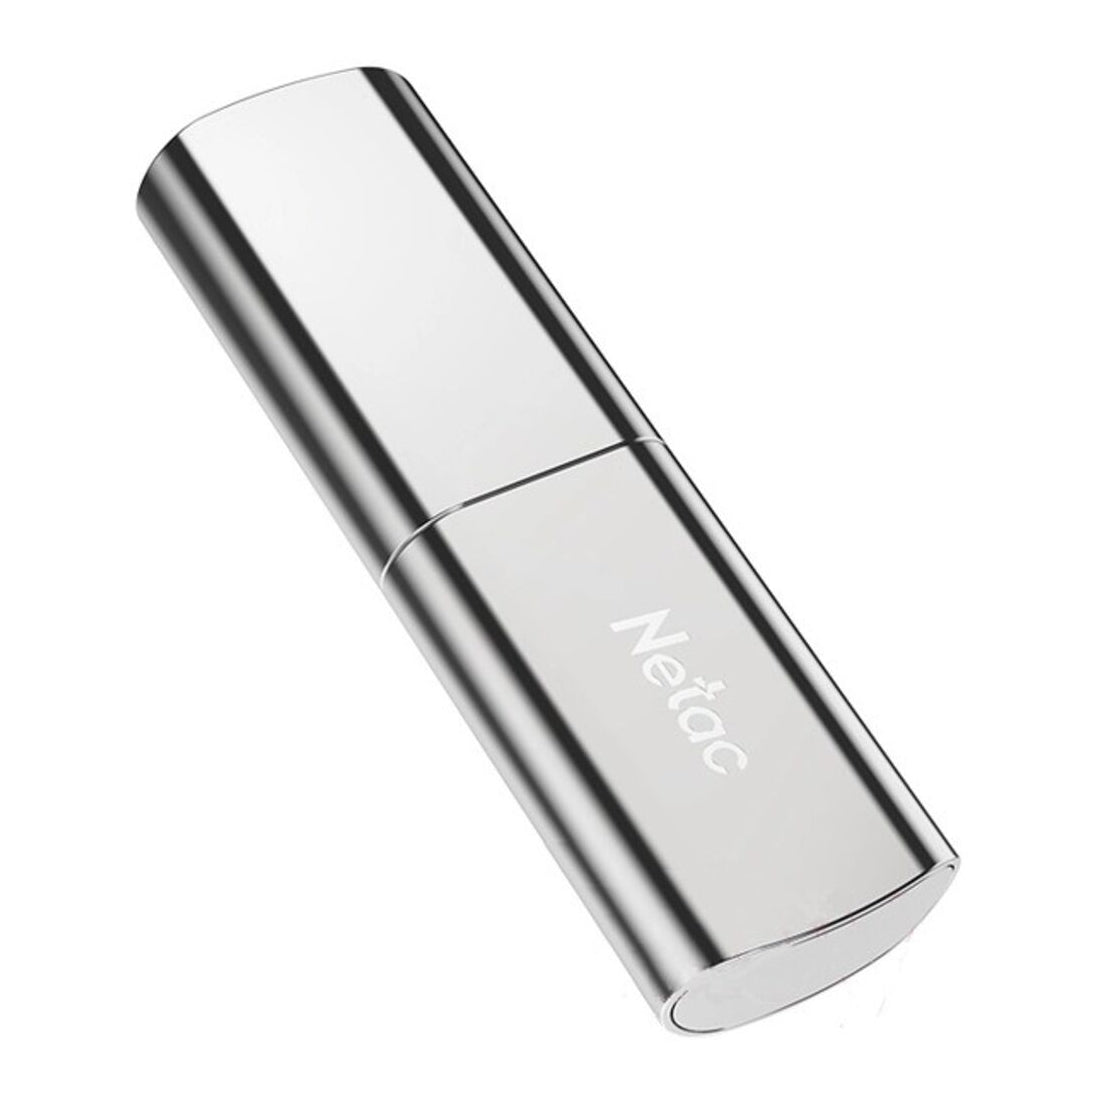 Netac US2 512GB USB 3.2 Flash Drive - مساحة تخزين - Store 974 | ستور ٩٧٤